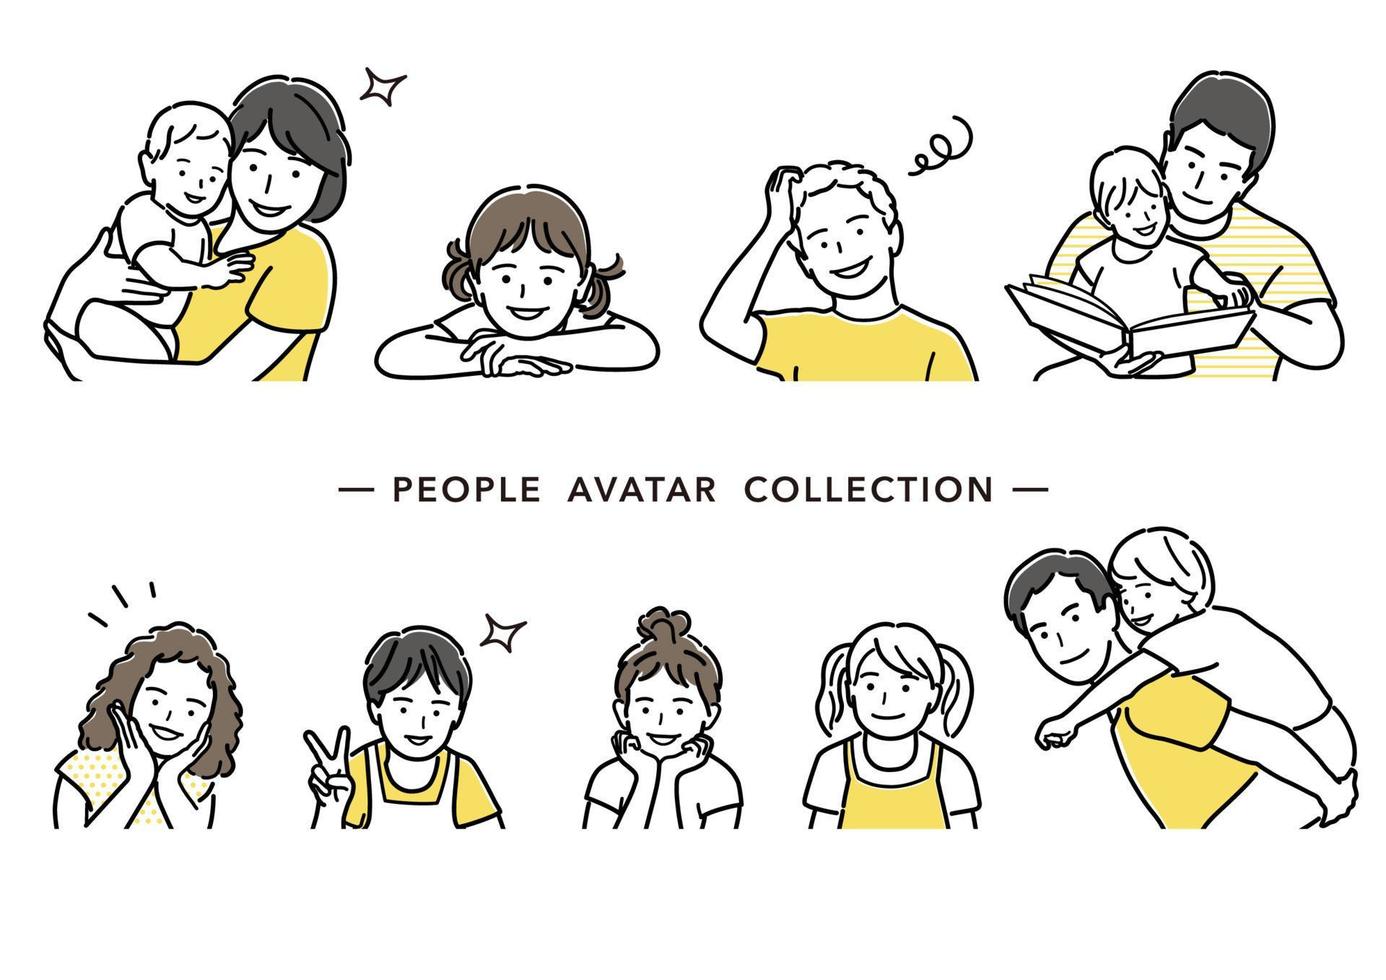 Menschen Avatar Vektor Strichzeichnung Sammlung. Satz von Eltern und Kindern flach einfache Illustration auf einem weißen Hintergrund.